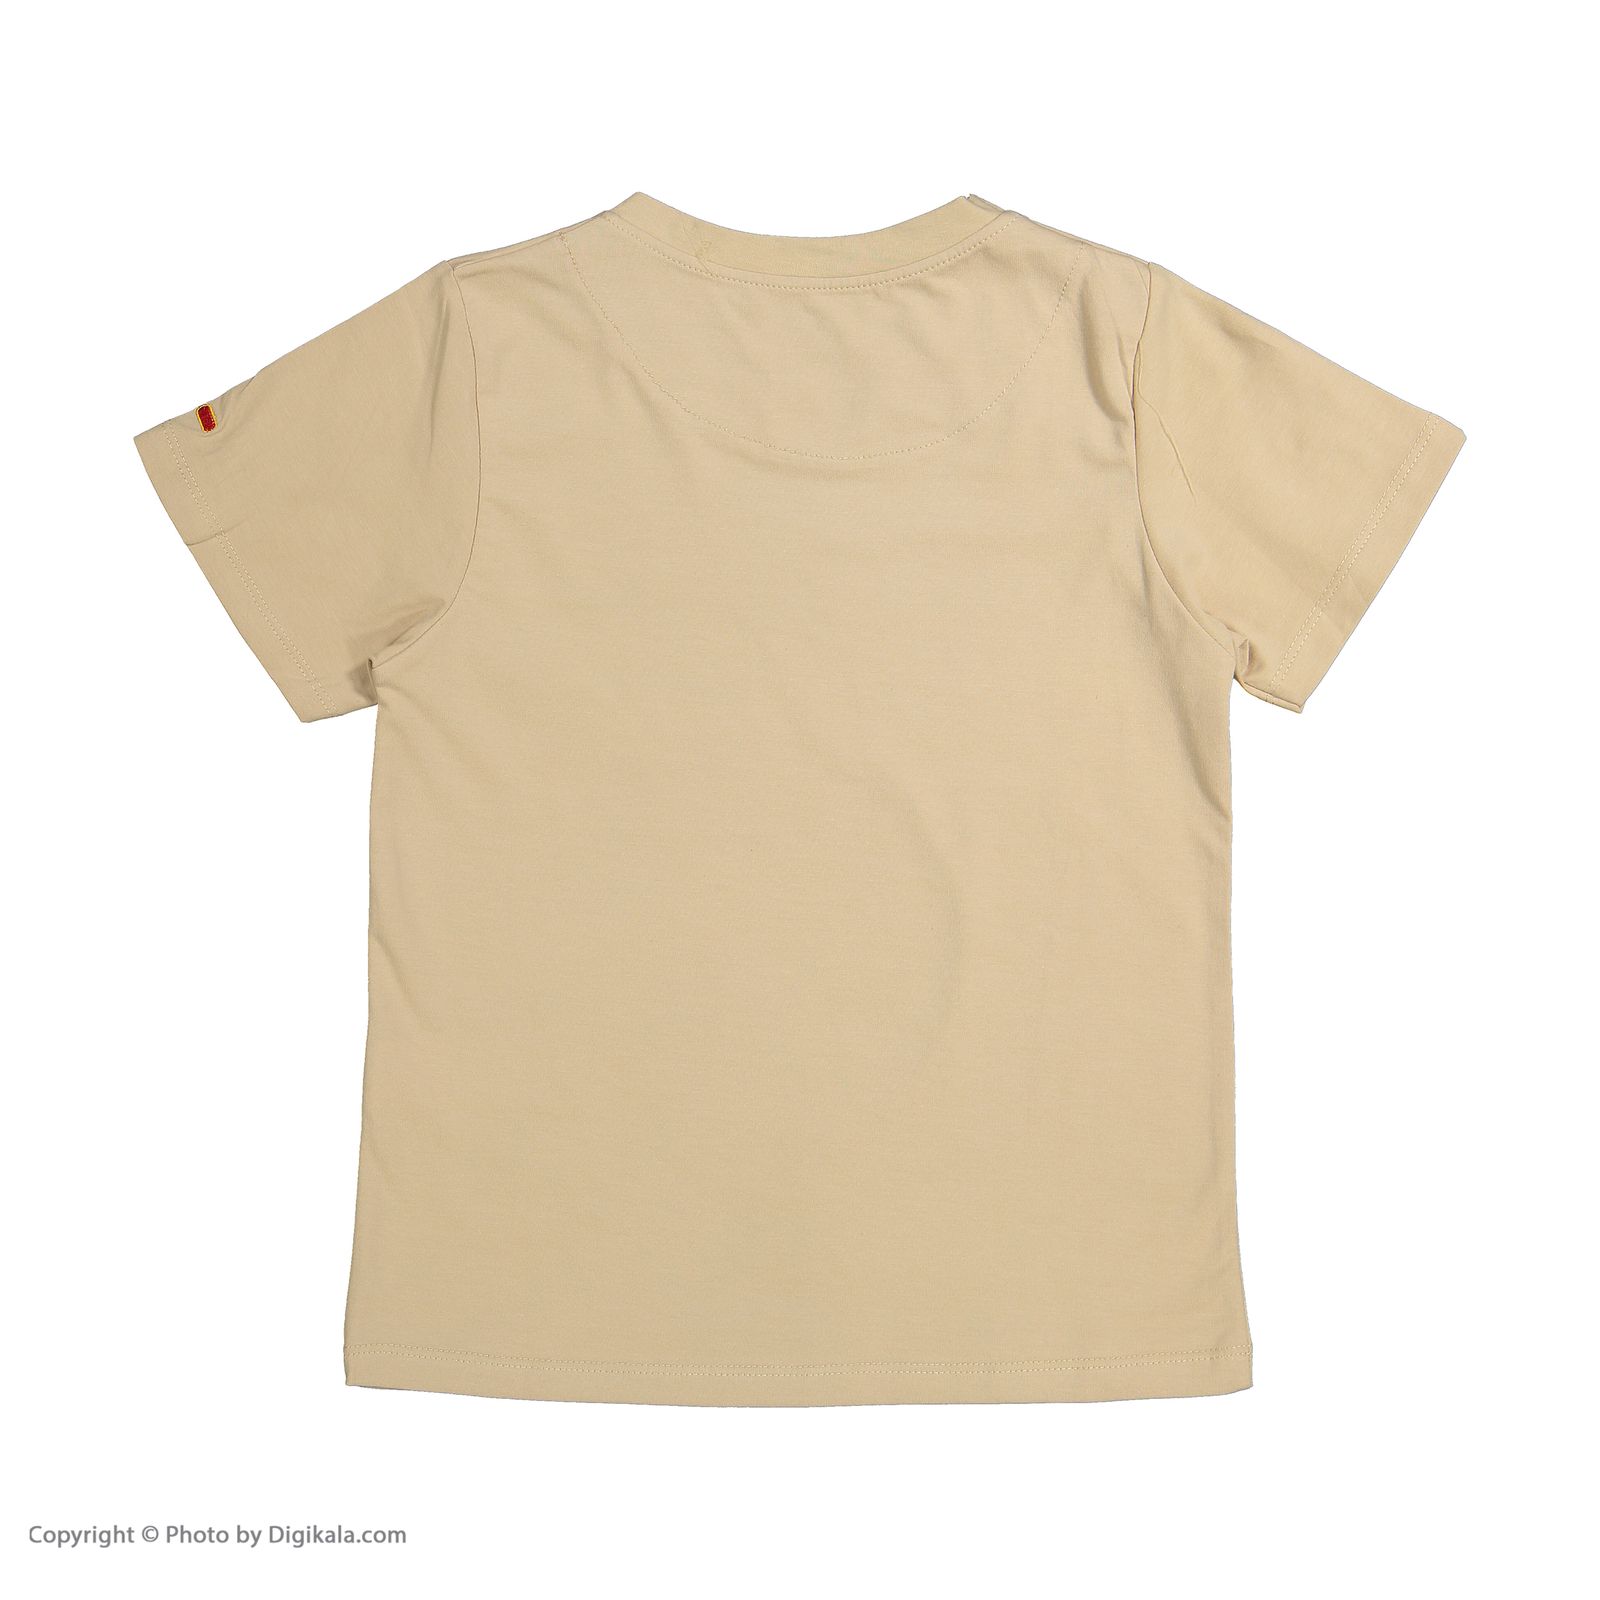 ست تی شرت و شلوارک راحتی پسرانه مادر مدل 2041109-07 -  - 4